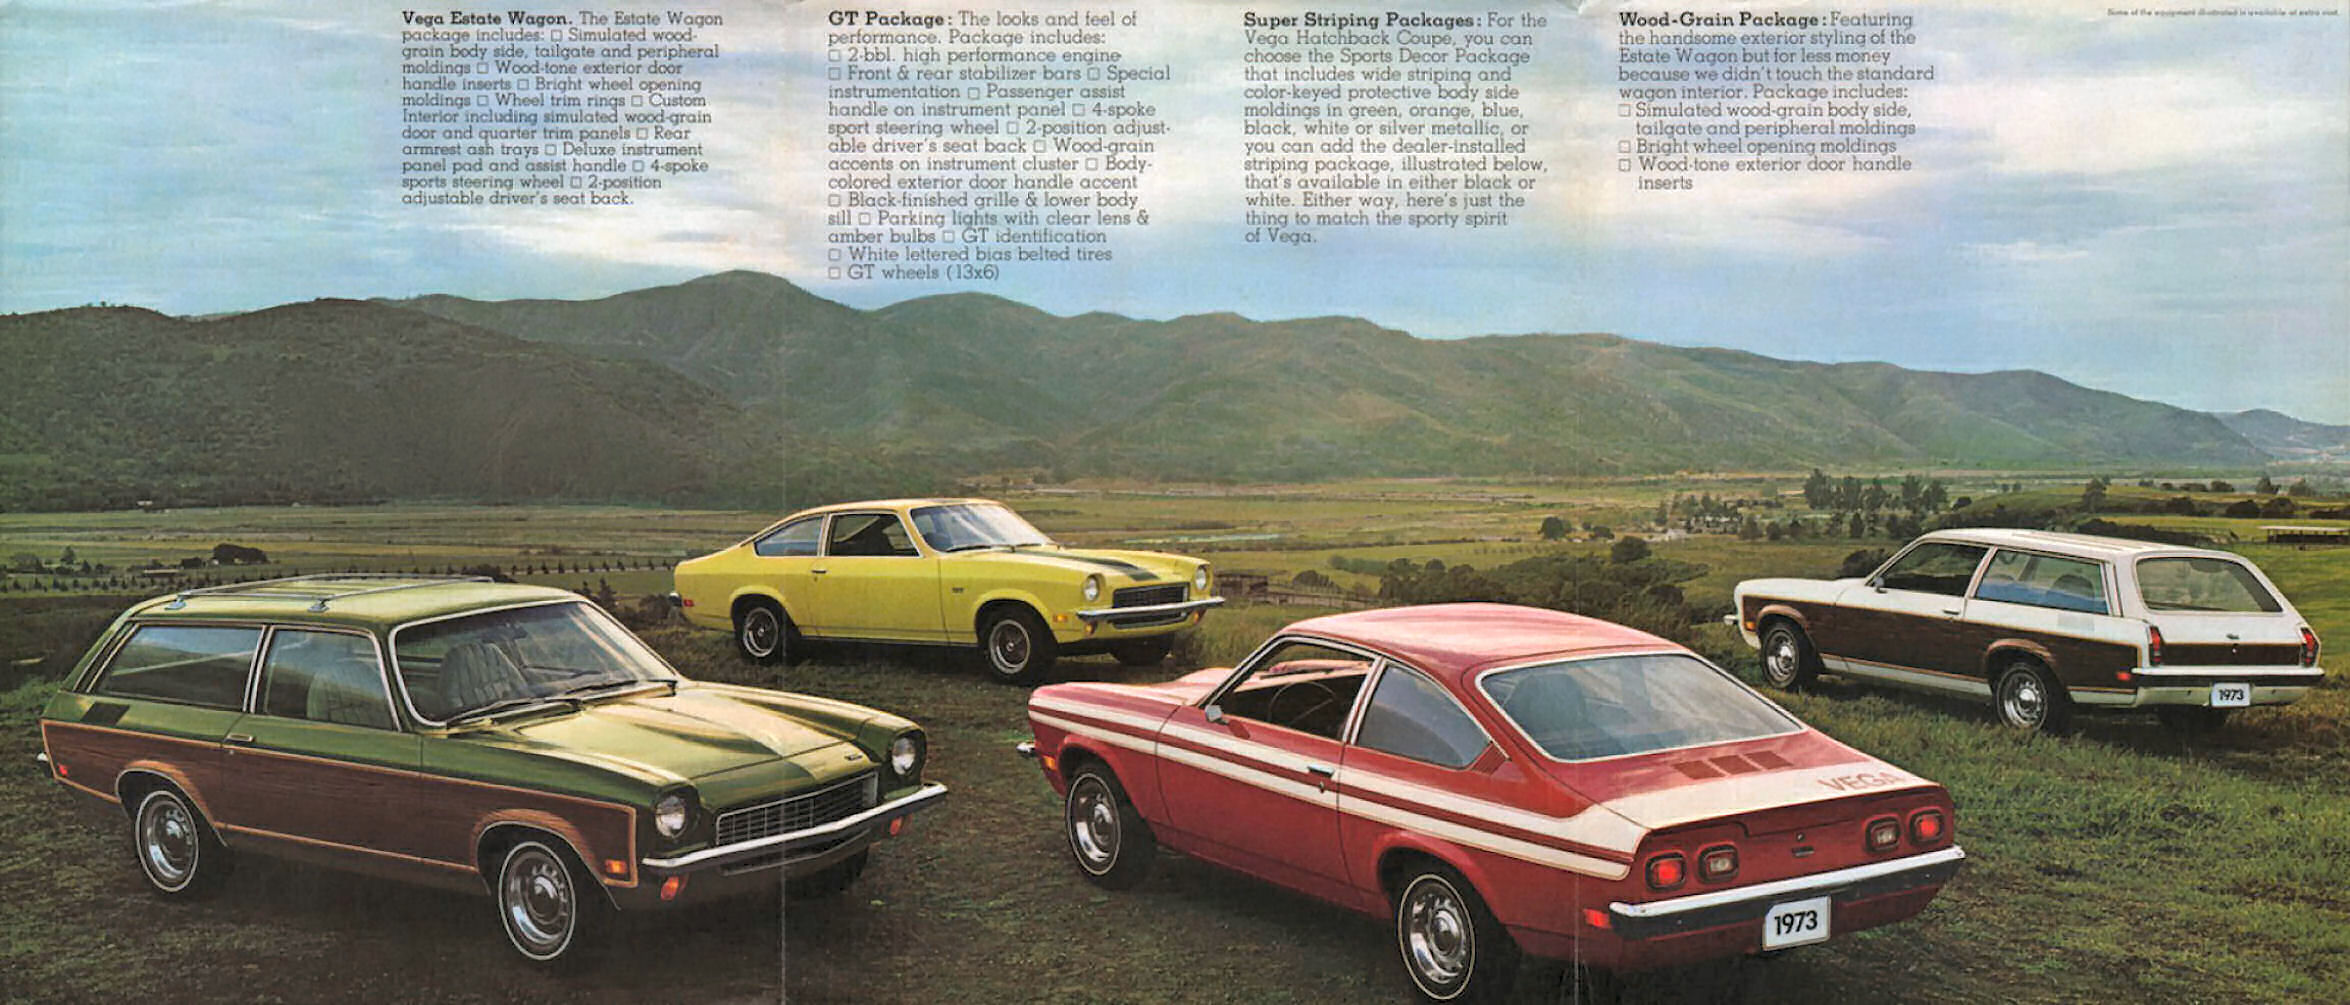 1973_Chevrolet_Vega_Foldout_Cdn-03-04-05